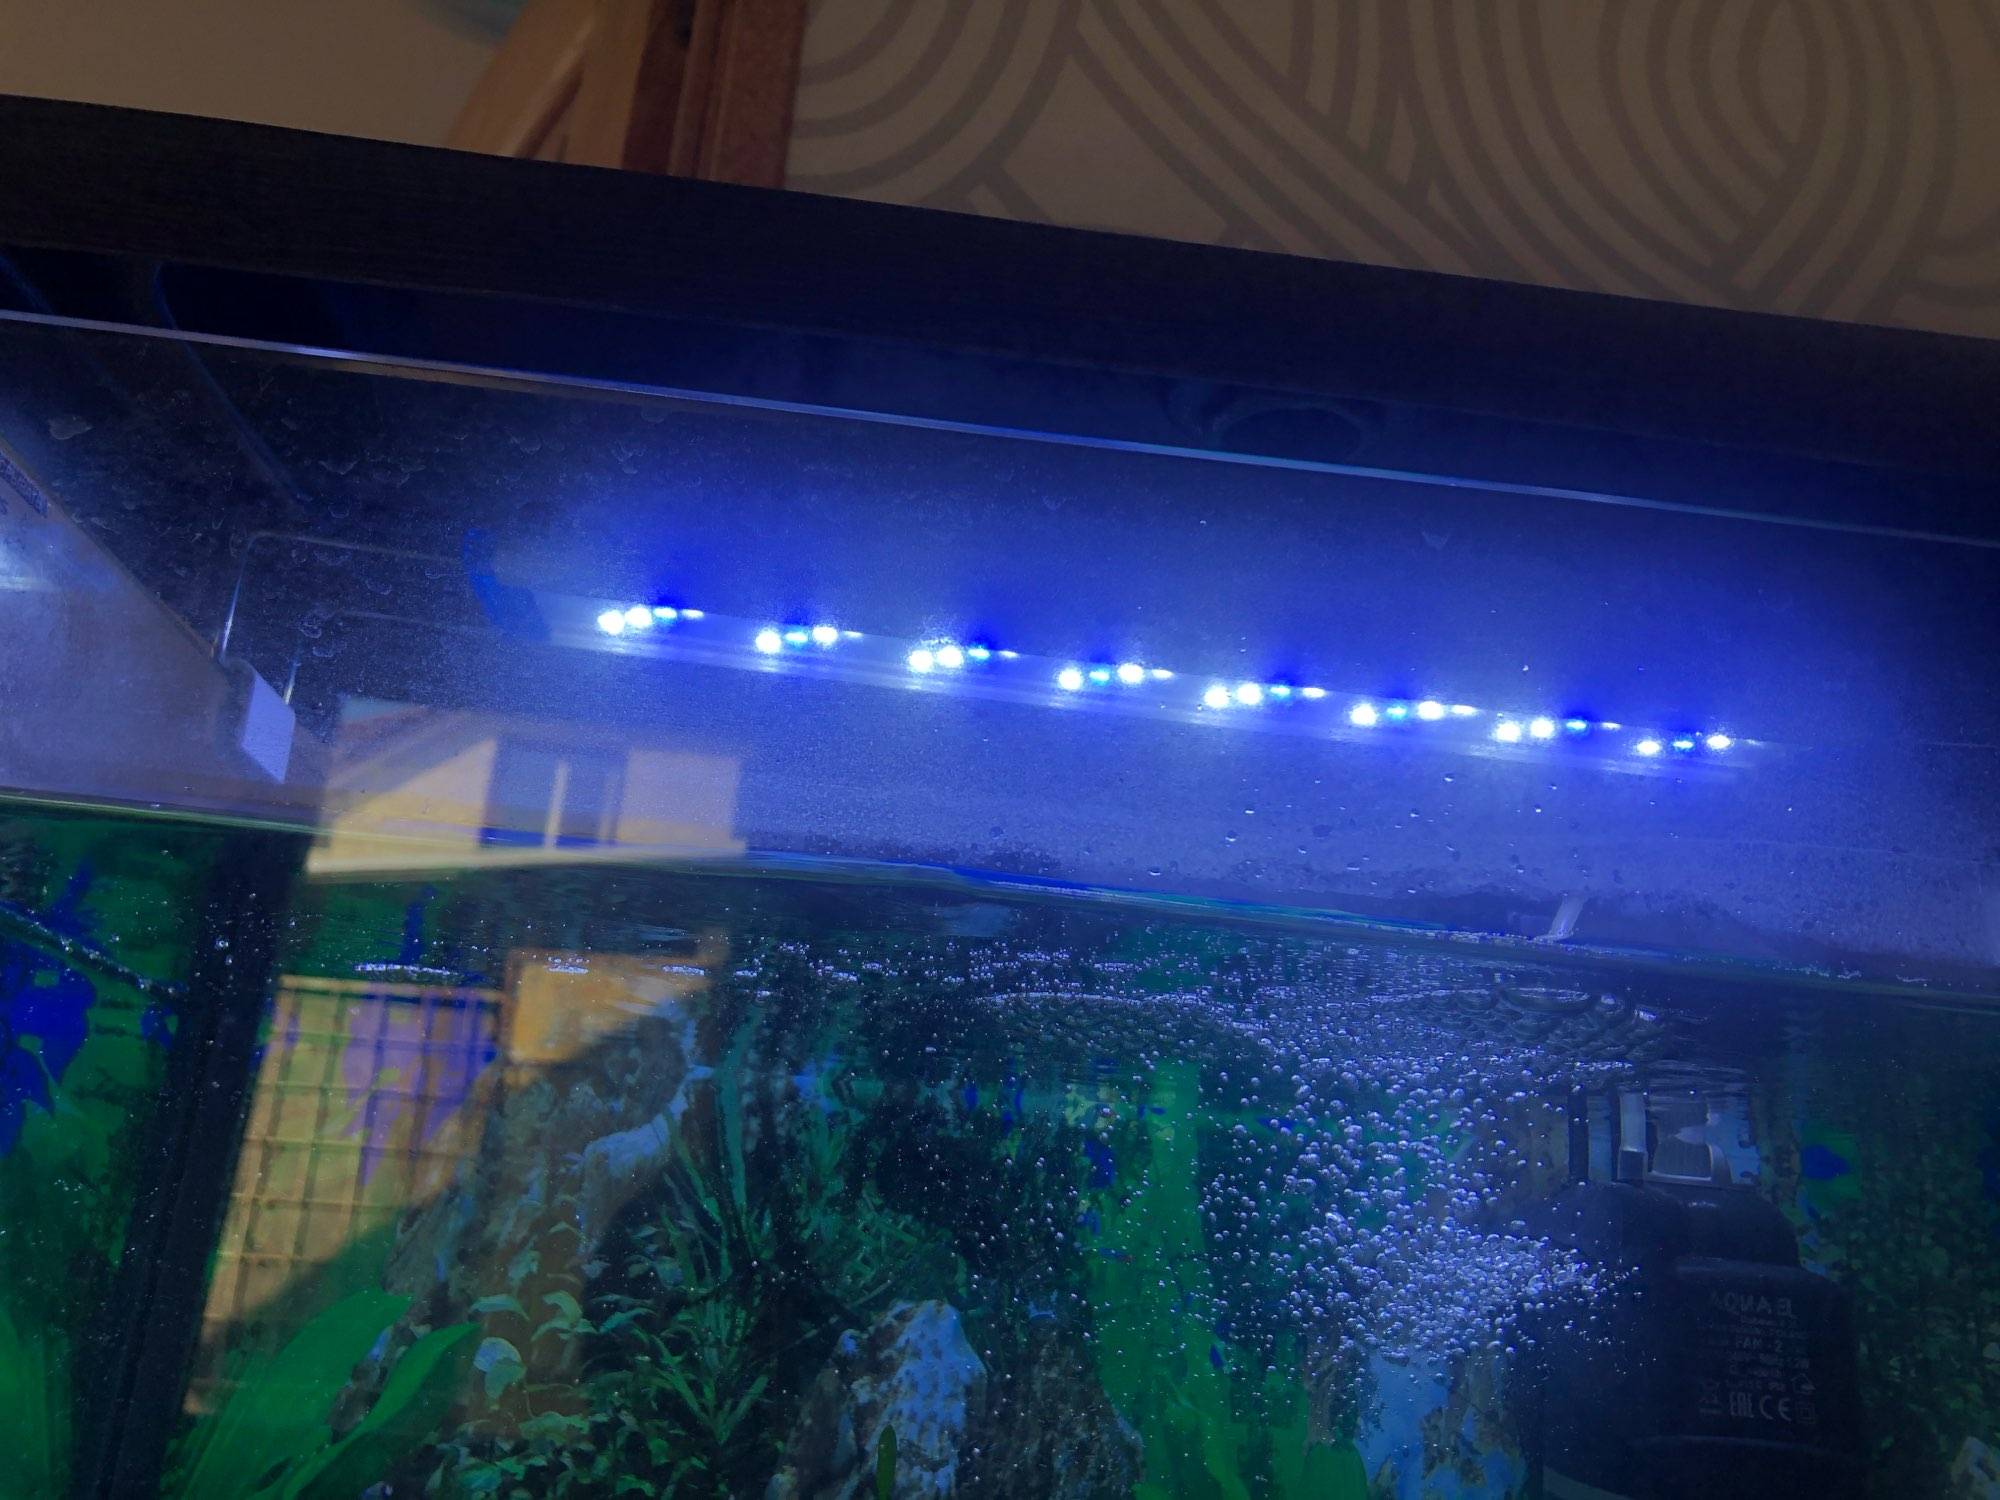 Освещение для аквариума (аквариумный свет): время работы, какой лучше, сколько света, как подобрать, расположение подсветки